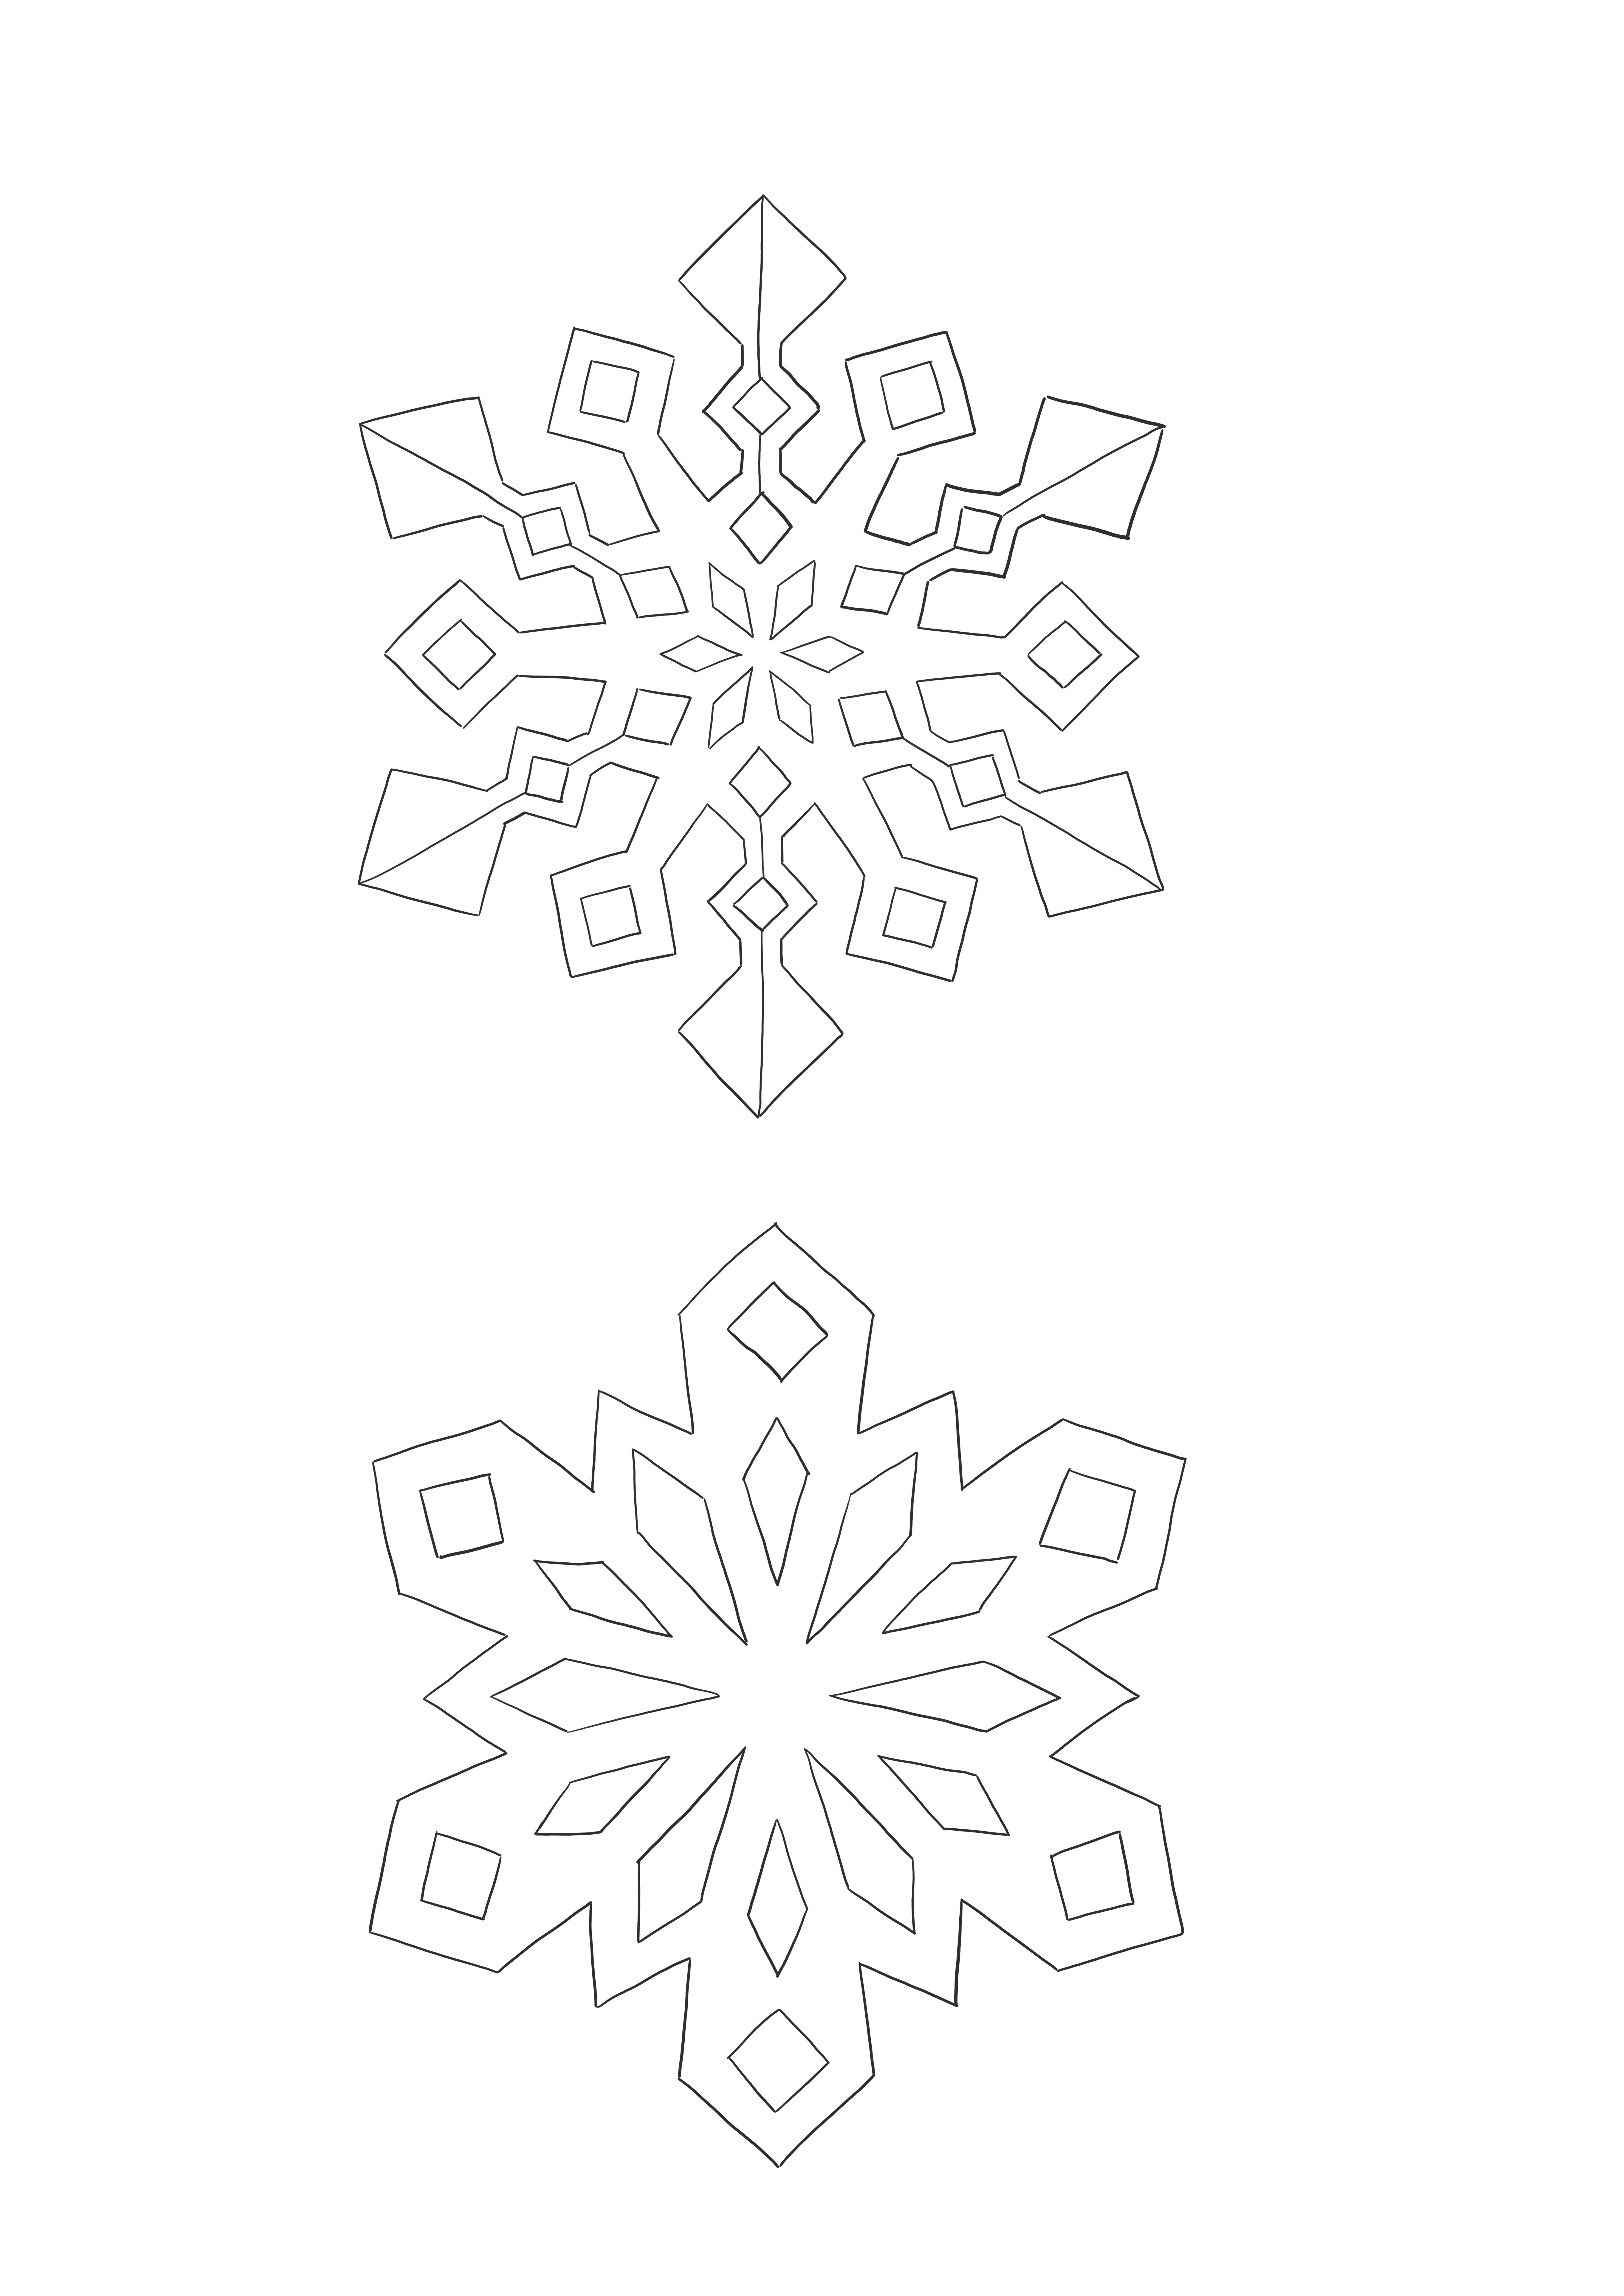 Image de flocons de neige facile à colorier pour les enfants de tous âges